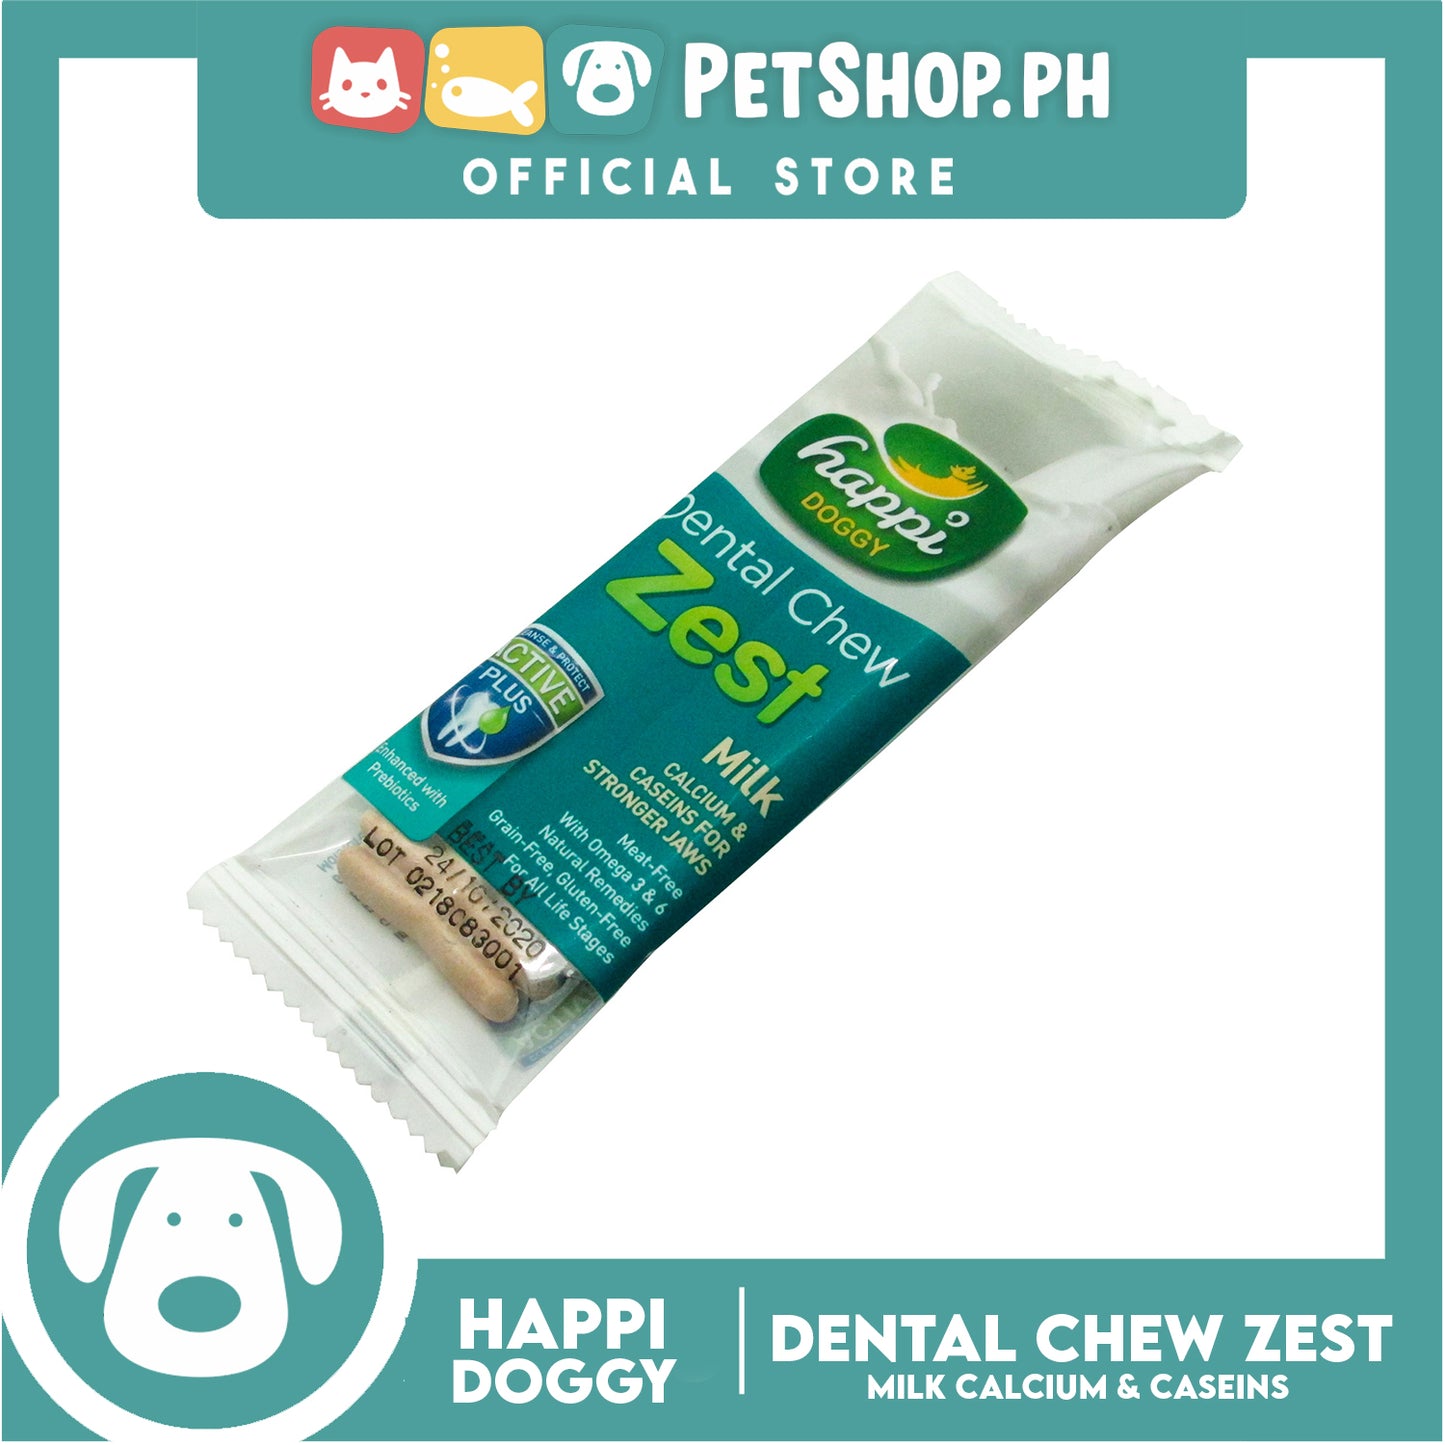 Happi Doggy Dental Chew Zest 1pc. 30g (Milk) Dog Treats